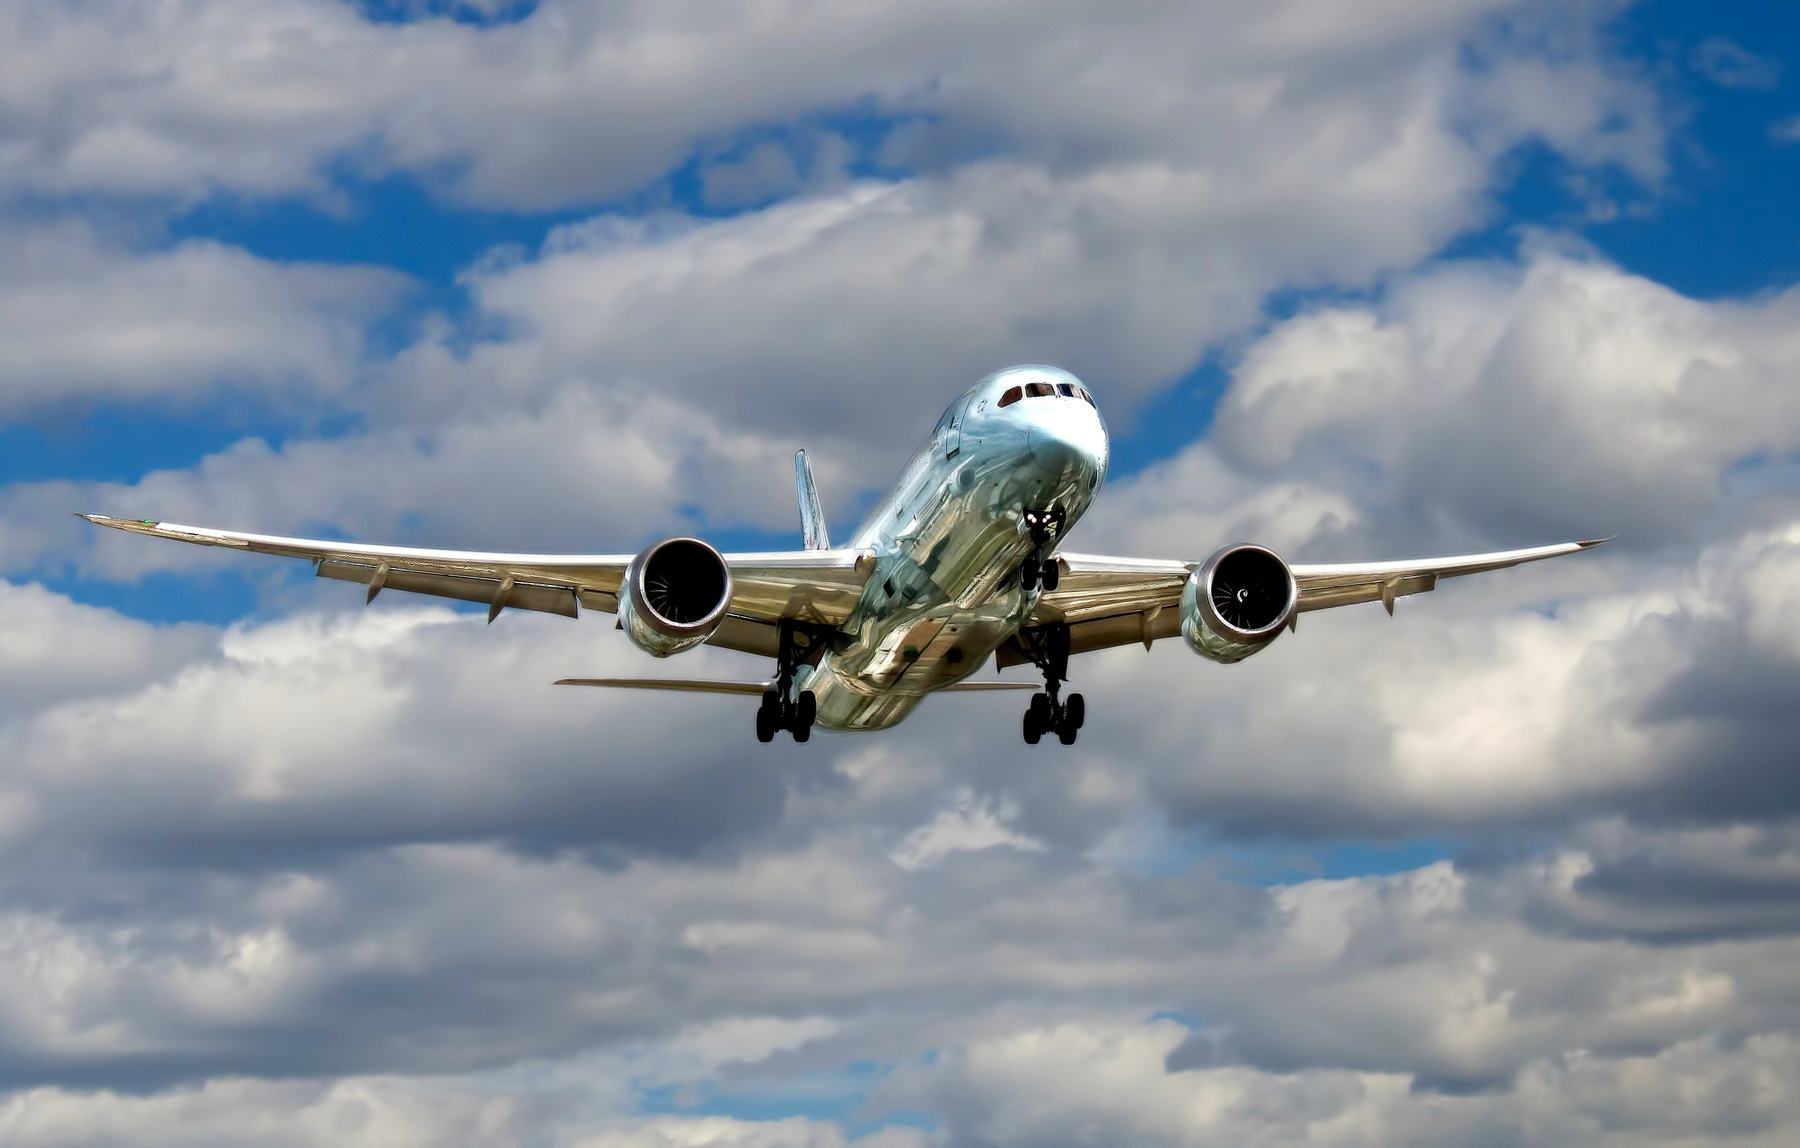 Kooperation zu Gunsten von Flugreisenden: Airhelp und Travix bieten Reise und Entschädigung zusammen an